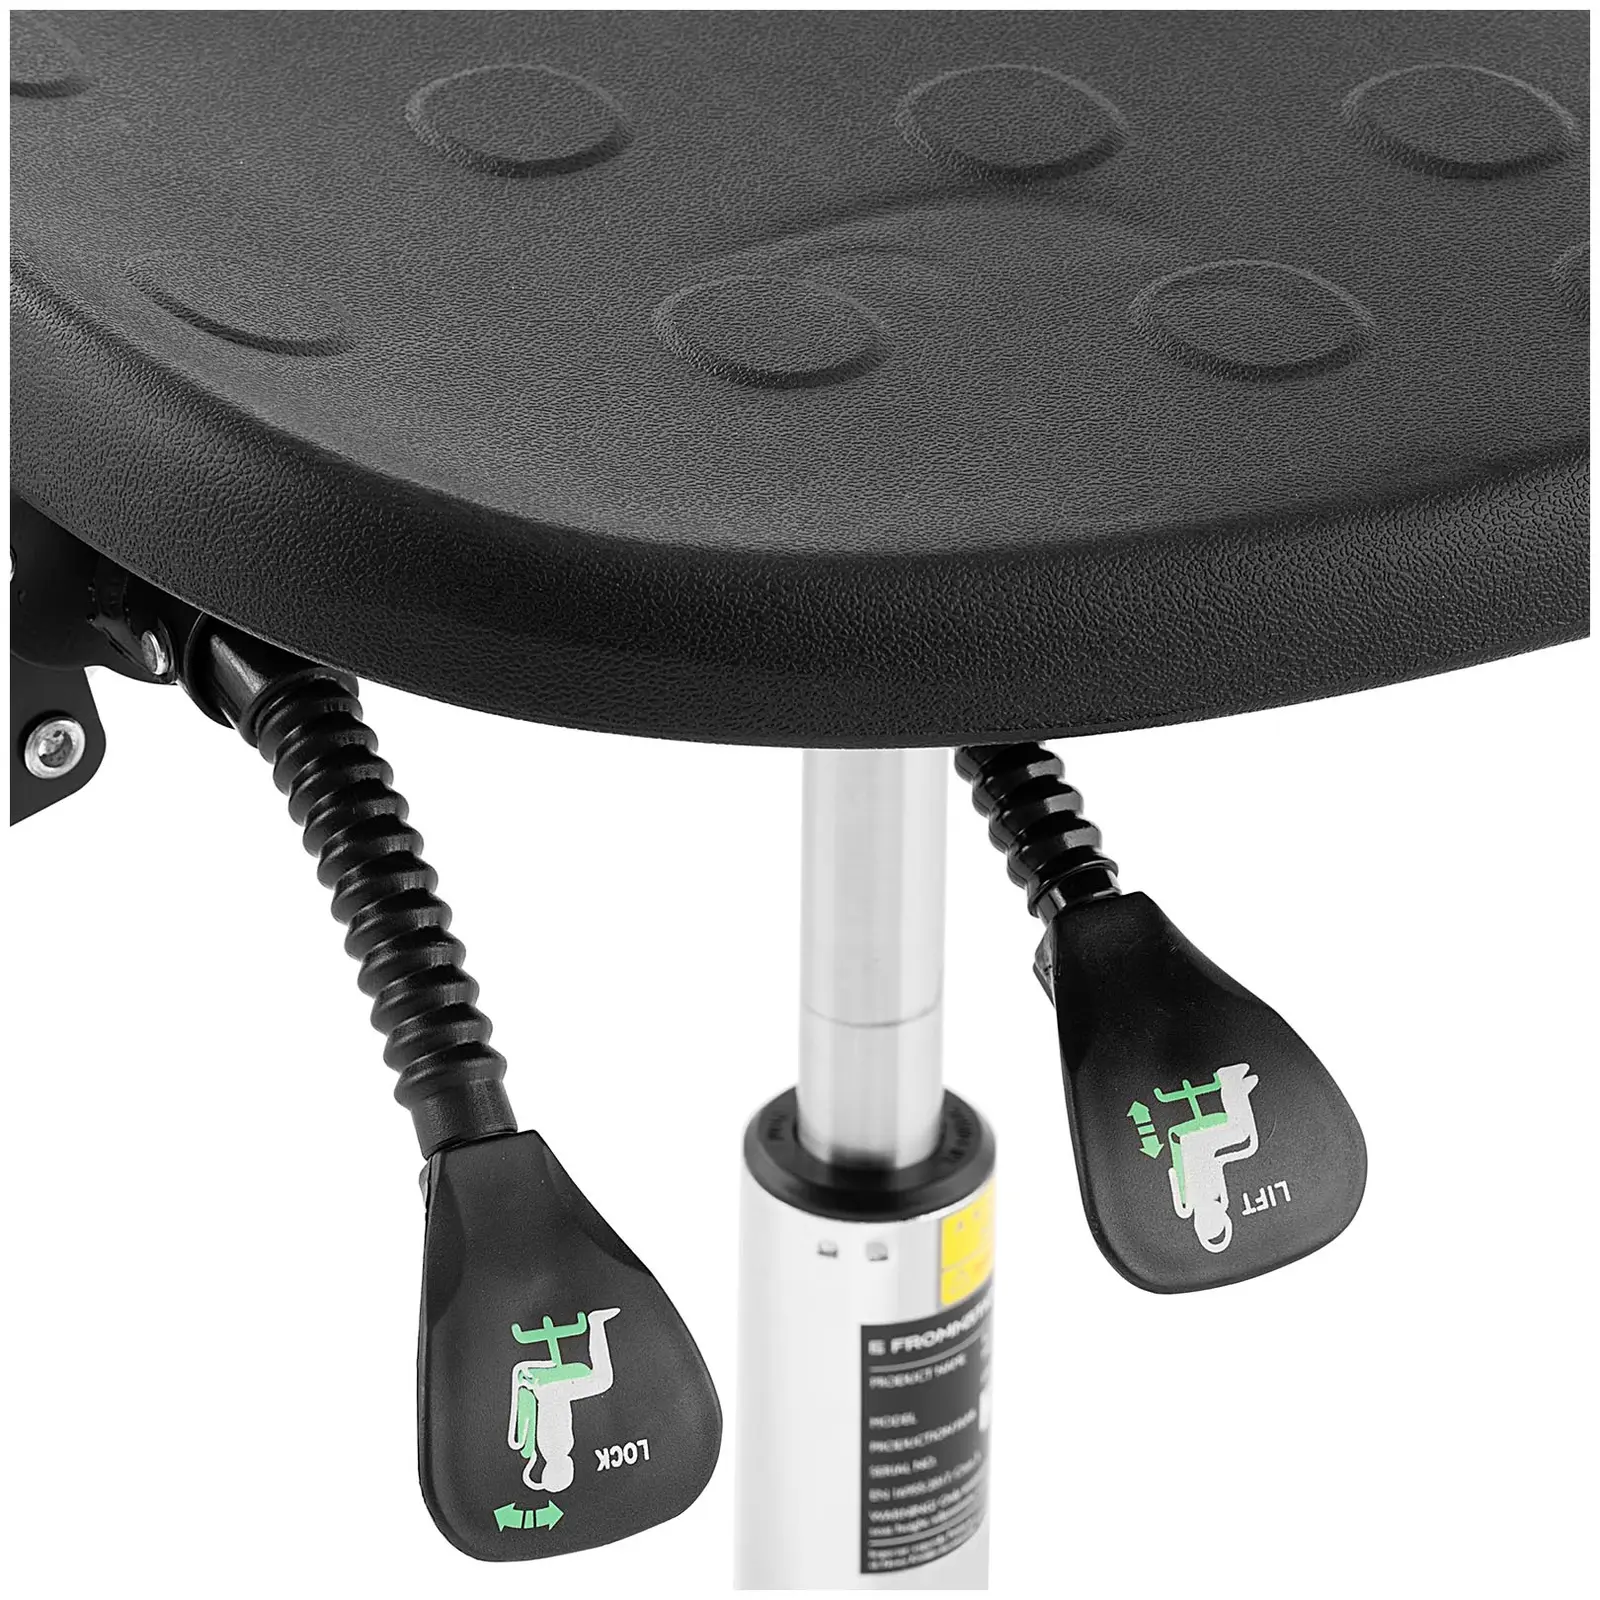 Industrijski stol - 120 kg - Black - višina nastavljiva od 515 - 780 mm